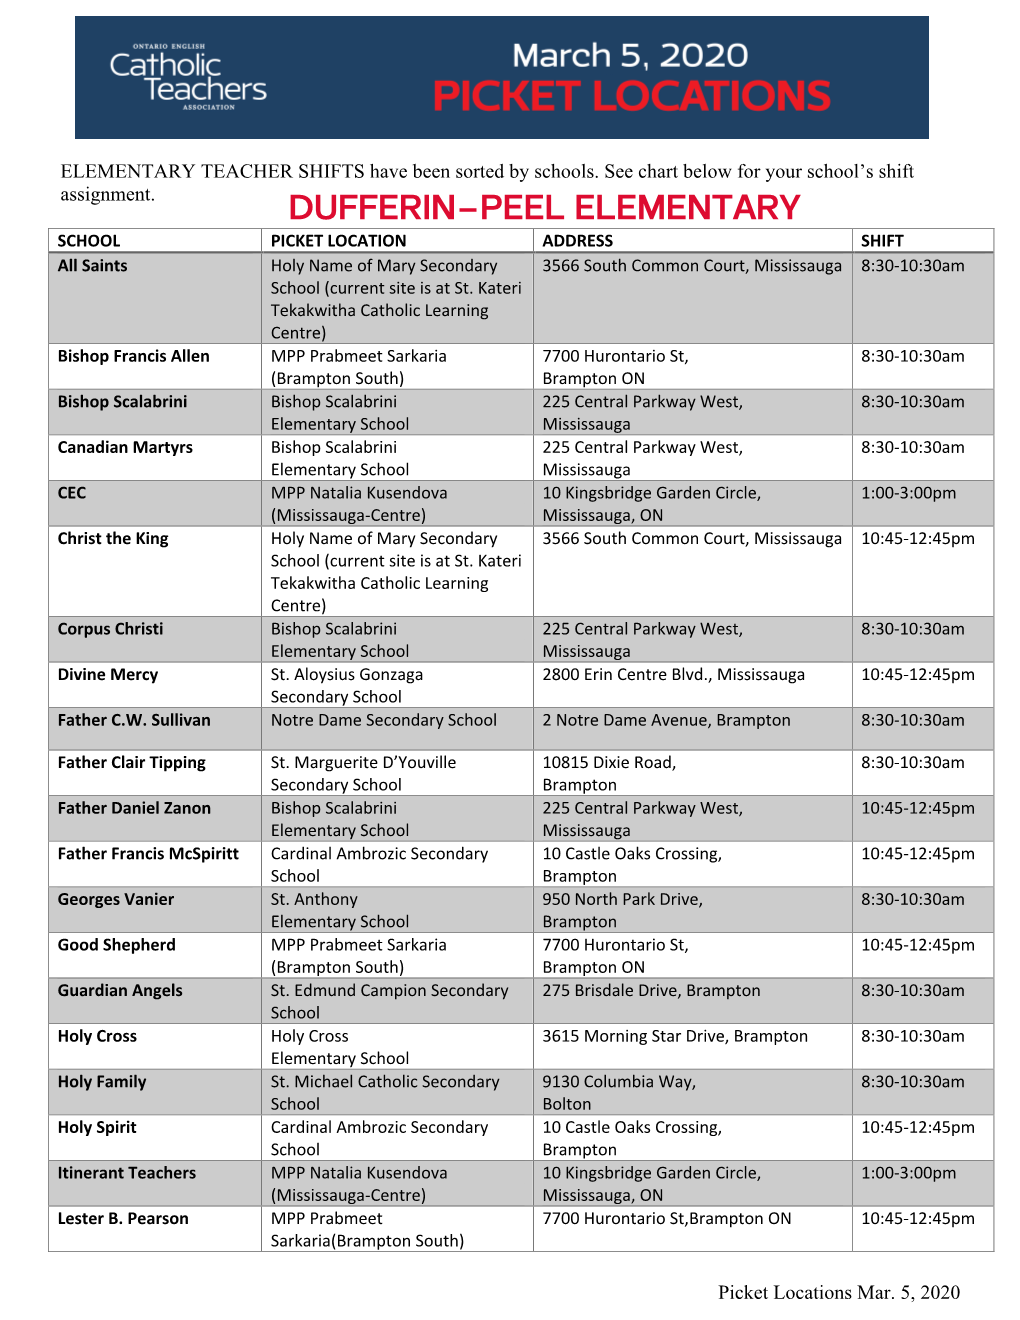 Dufferin-Peel Elementary